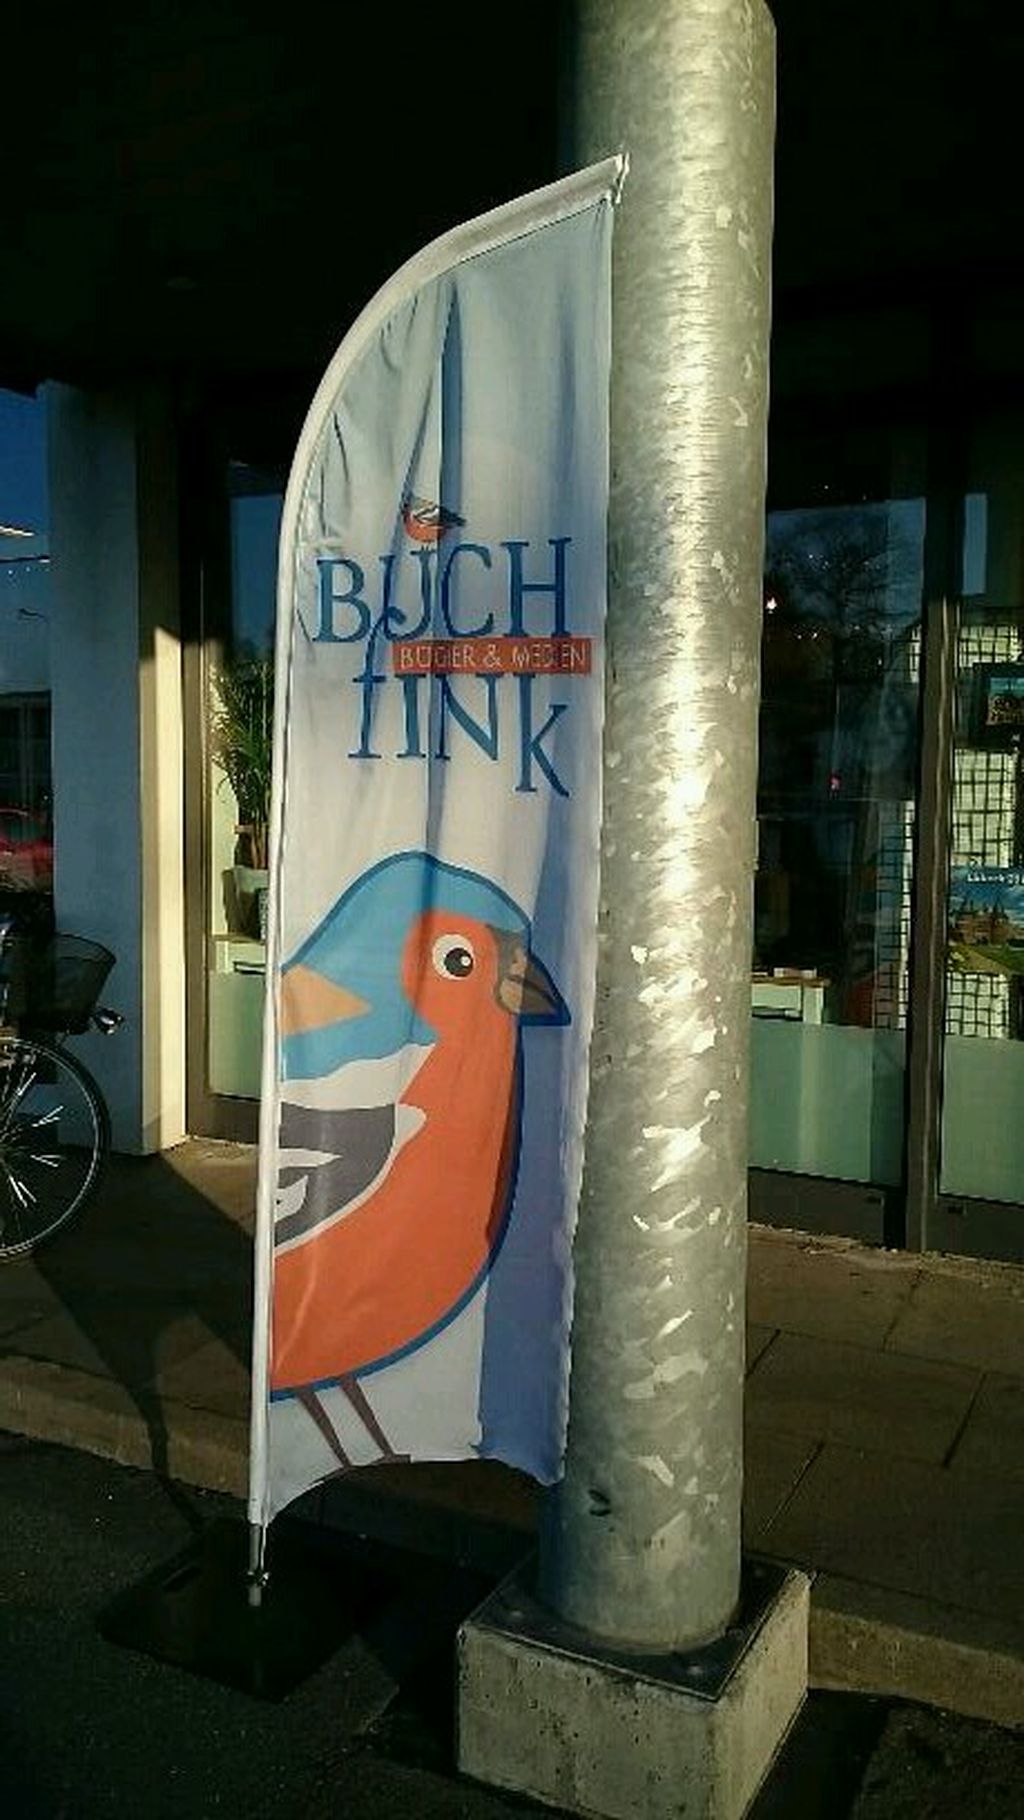 Nutzerfoto 2 Buchhandlung Buchfink GmbH